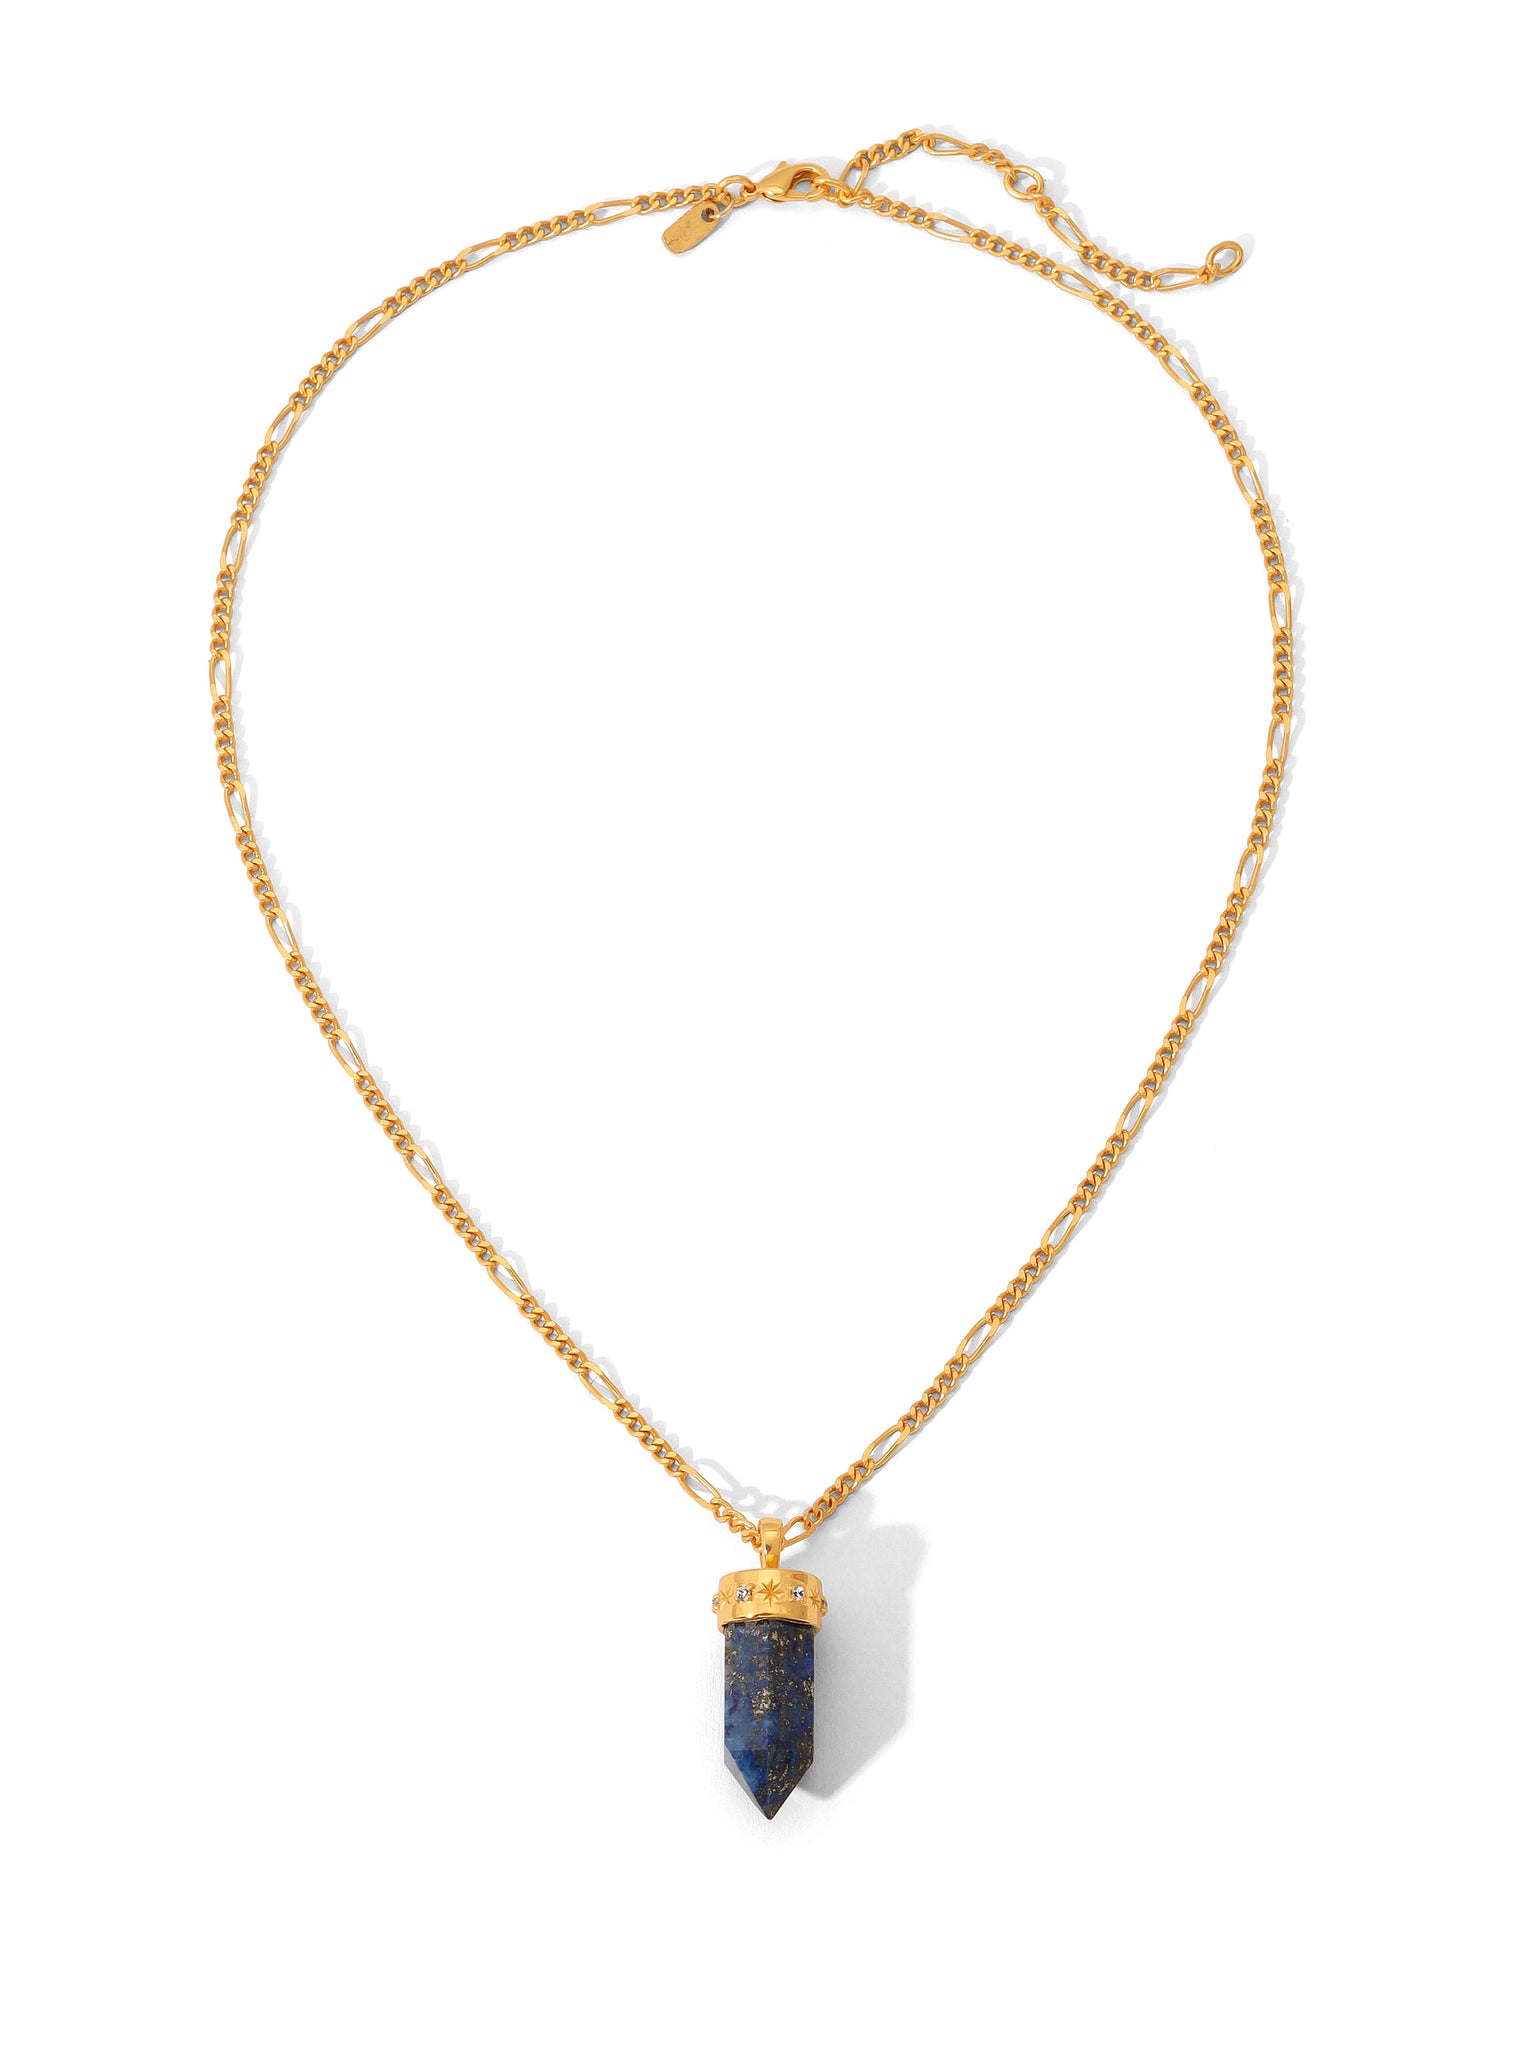 The Alette Lapis Necklace